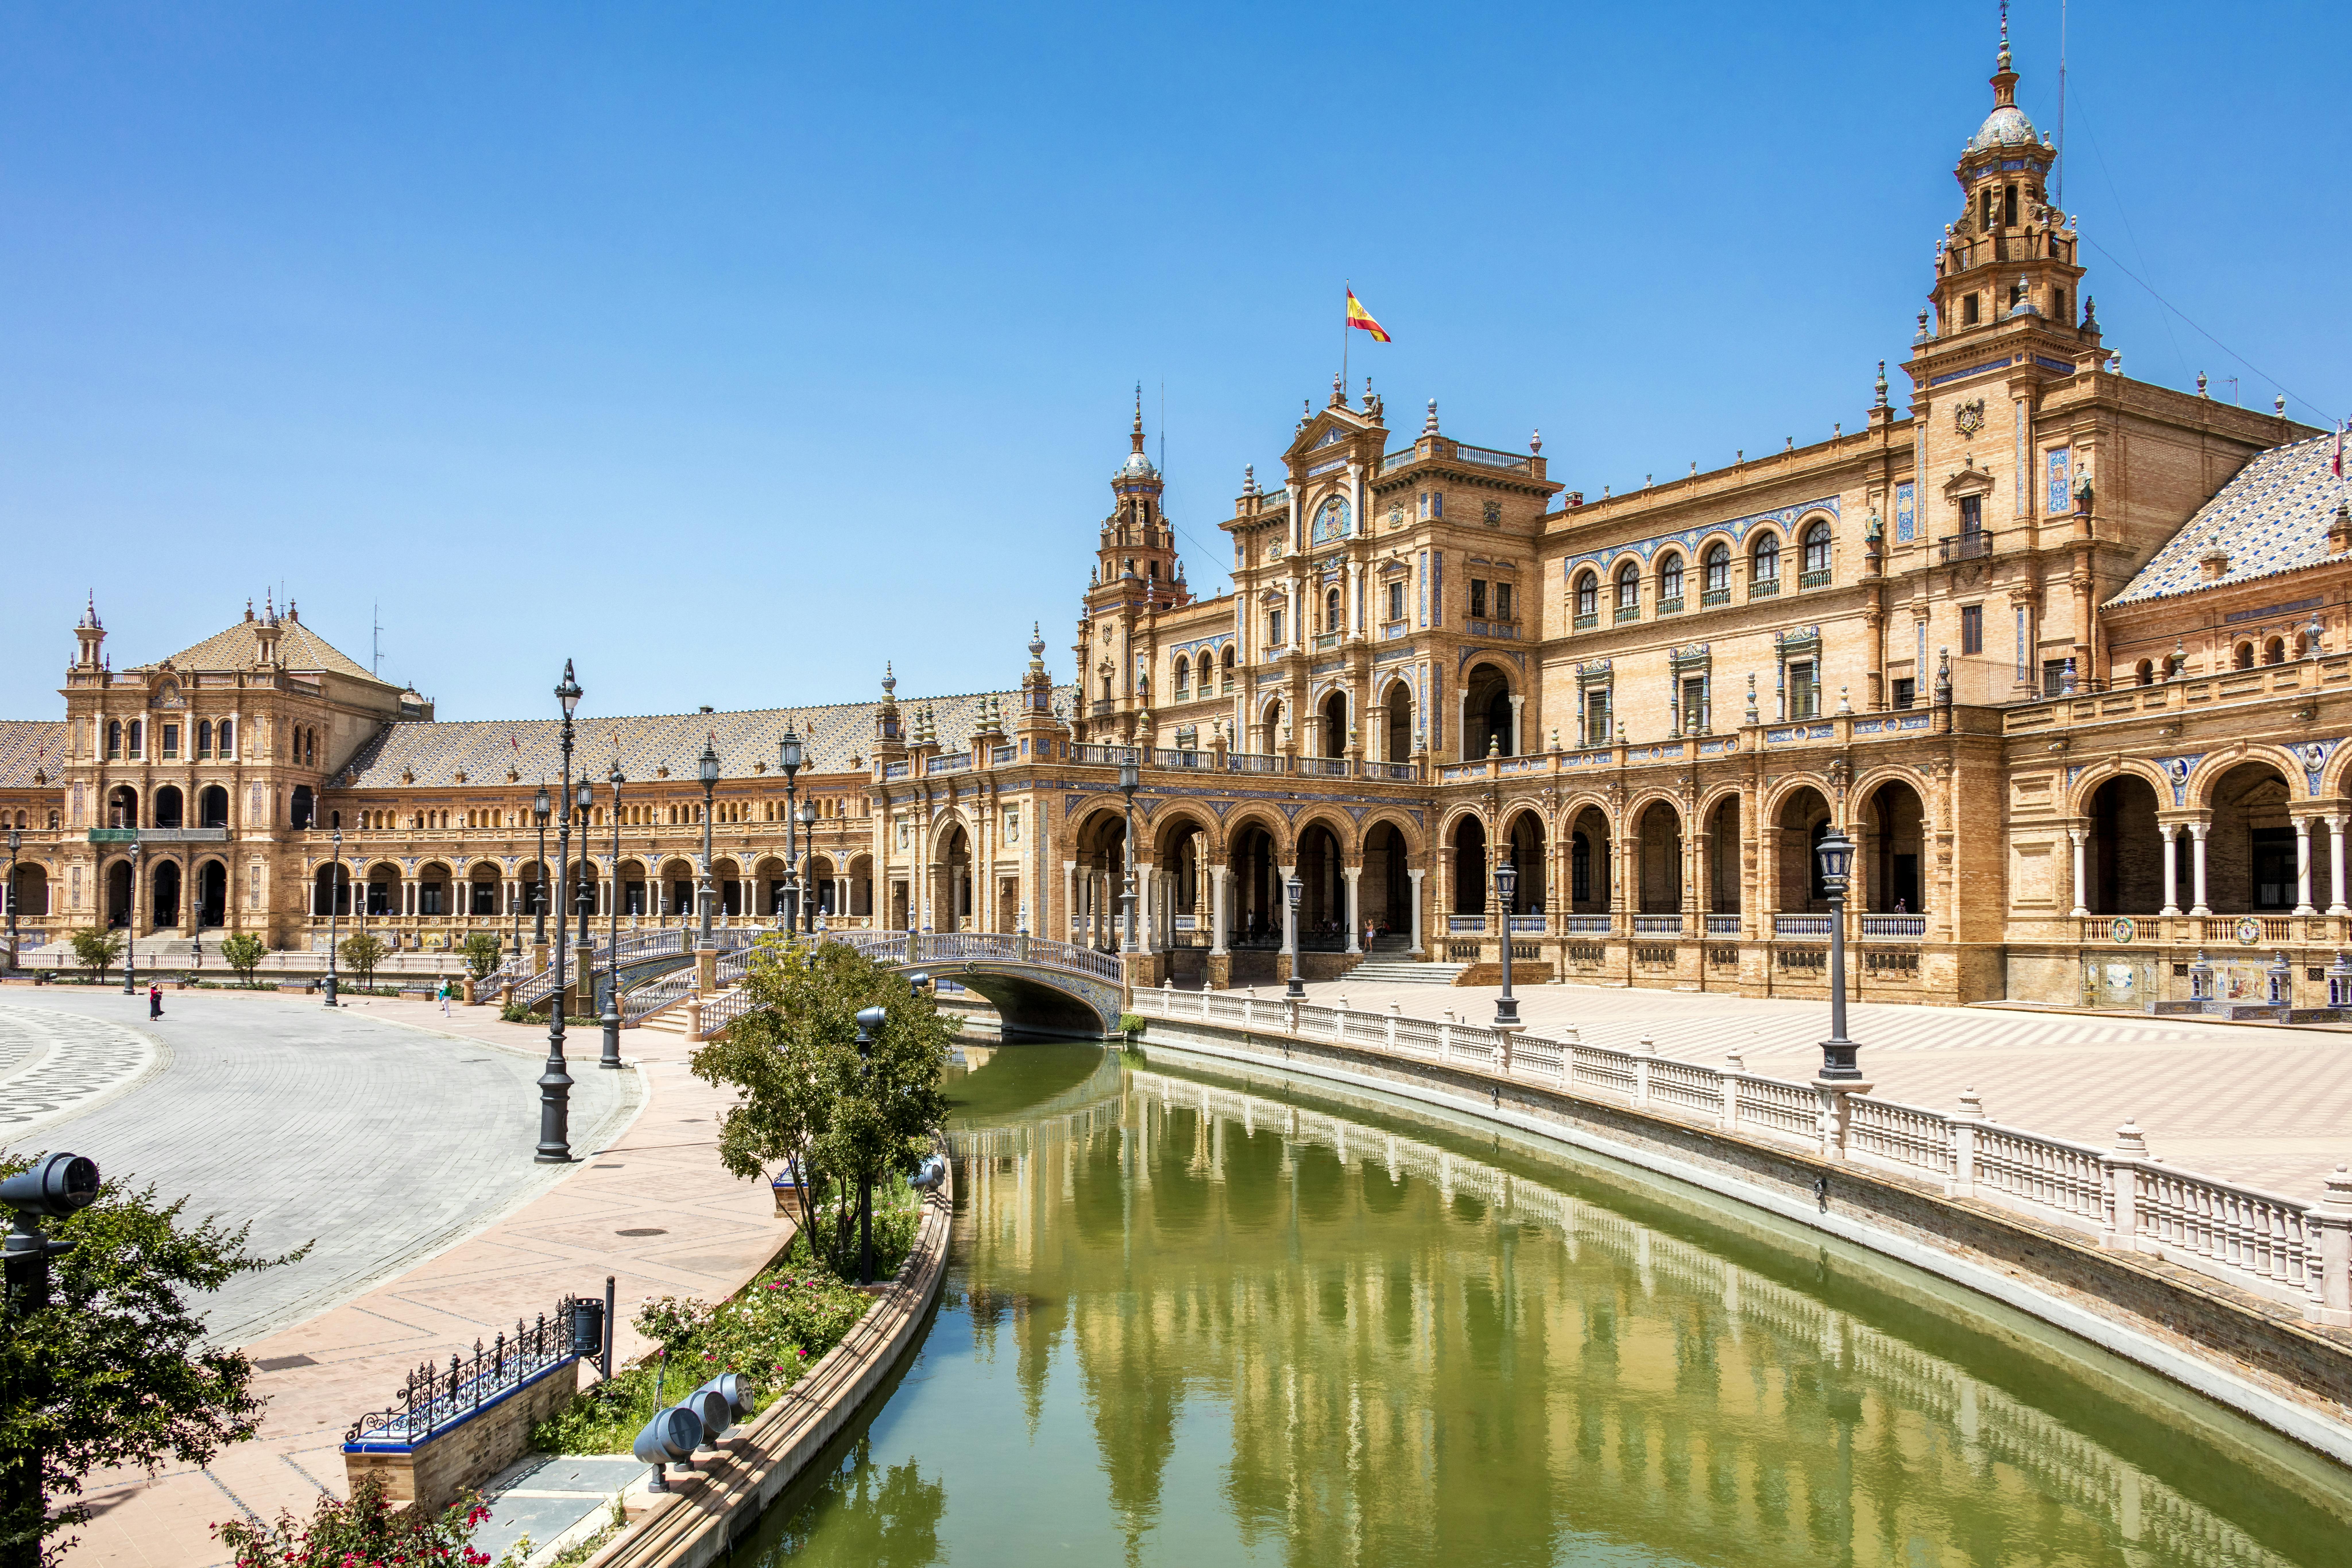 Kultur och stadsrundtur i Sevilla